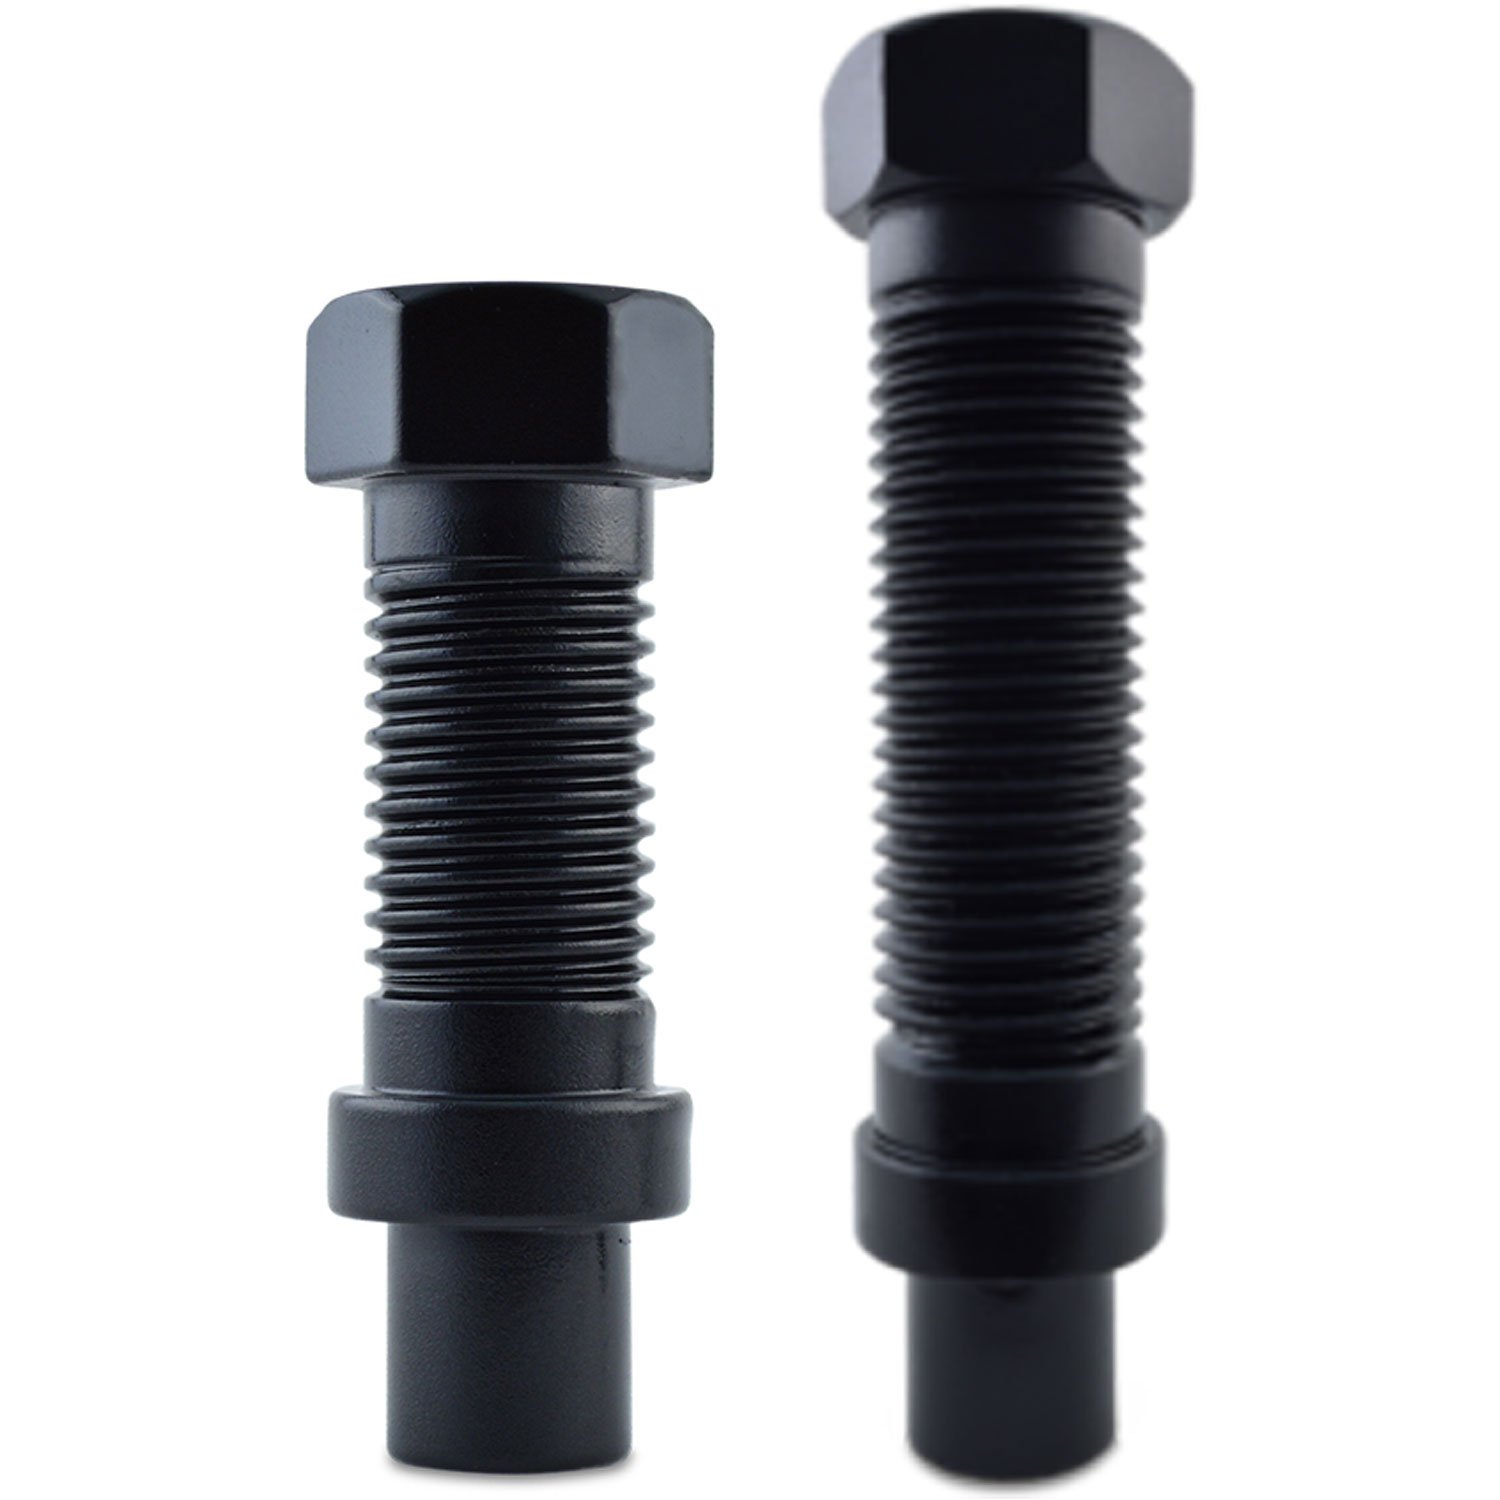 8-Lug Dually Bolt Style Lug Nut Kit Thread: 14mm x 2.0